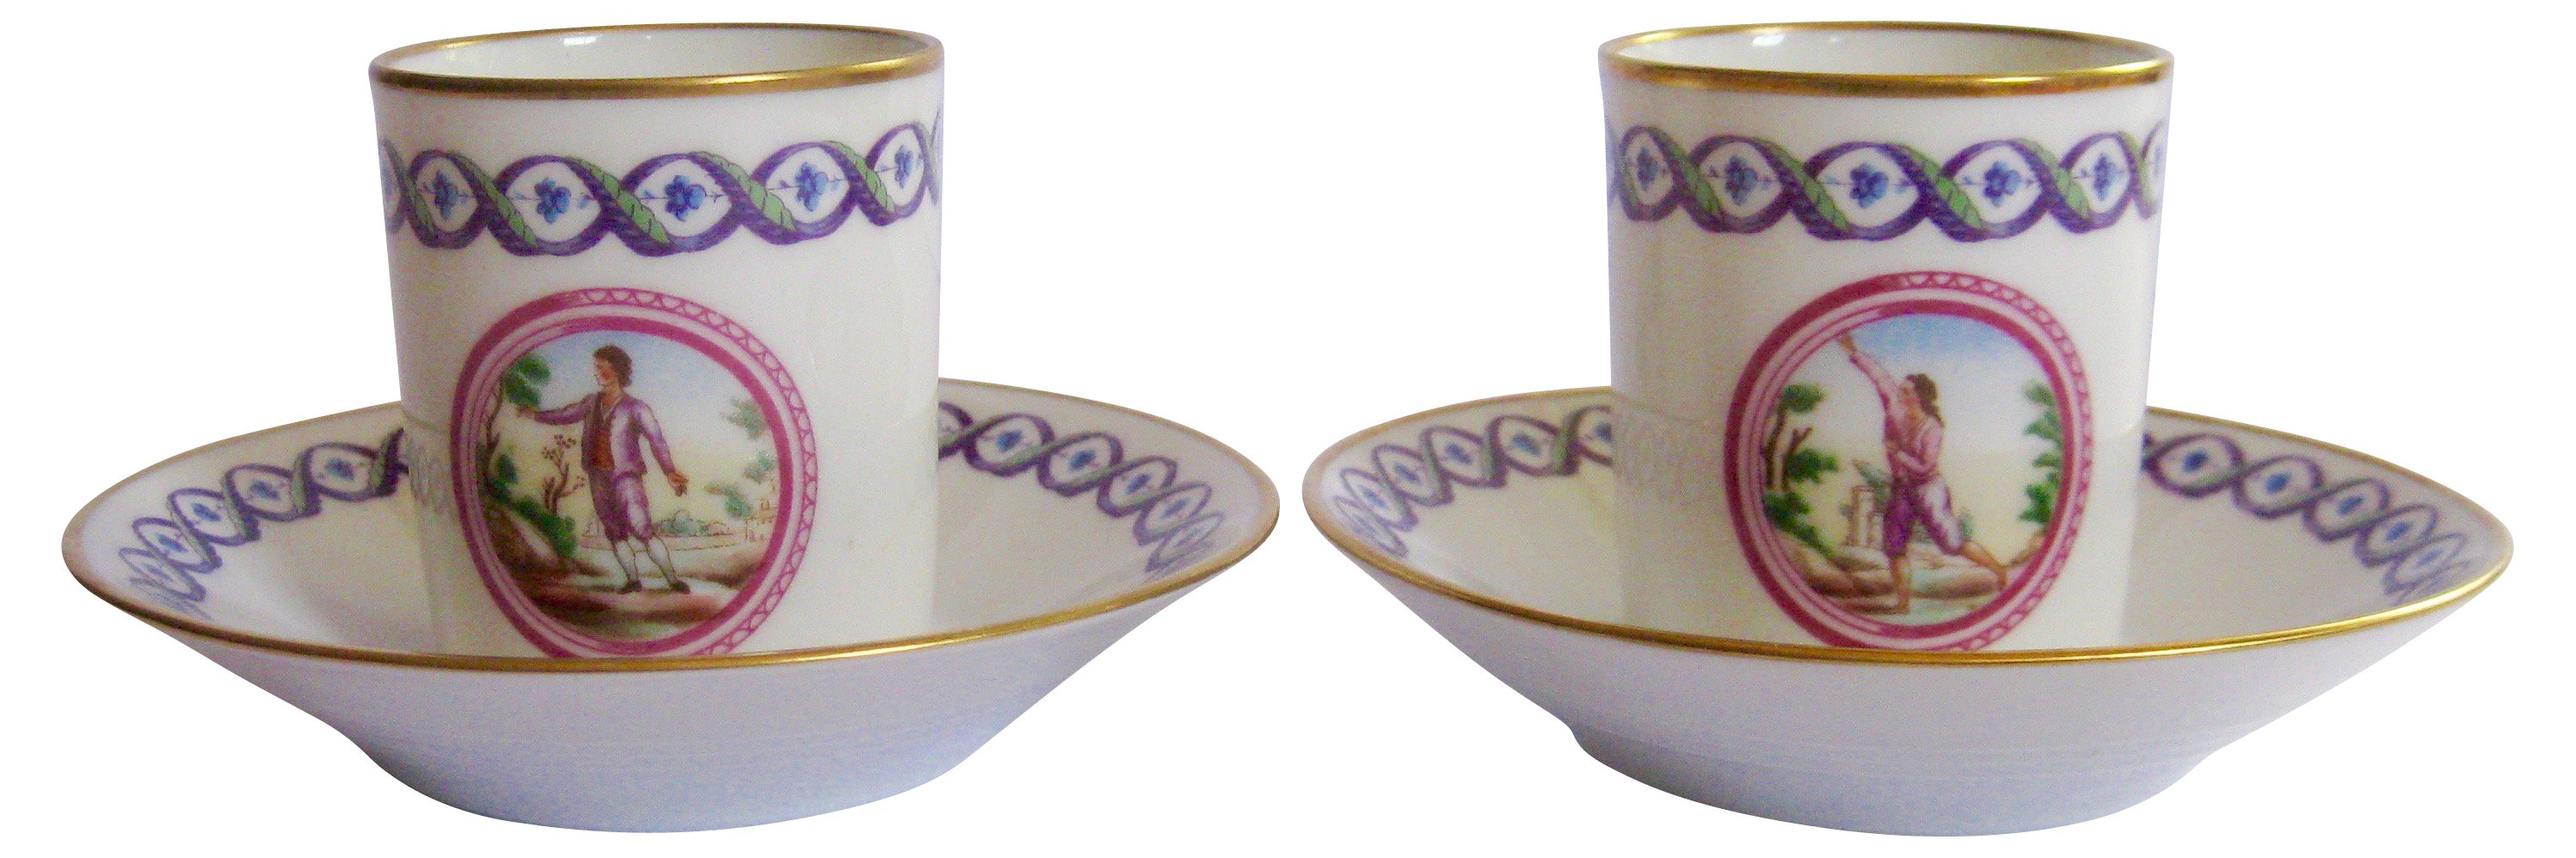 Ginori Italian Porcelain Cups & Saucers~P77367924